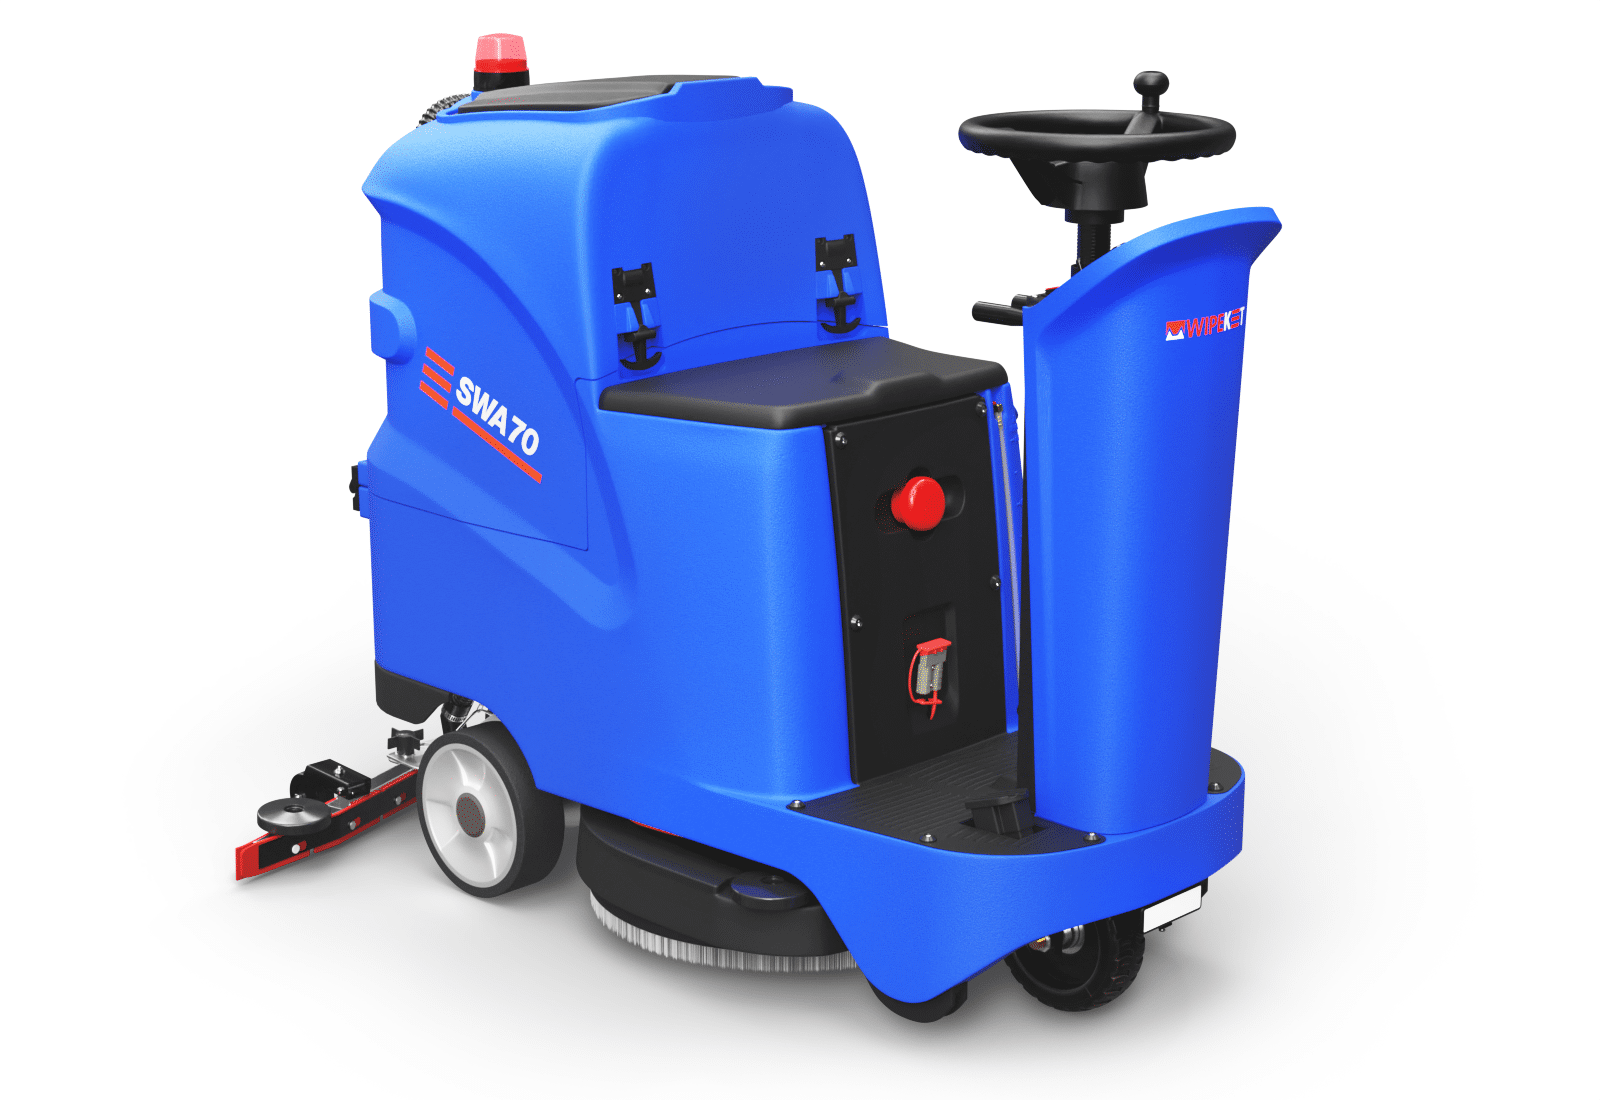 SM860 34 Ride-On Floor Scrubber Dryer Machine, 34.3 Gal Sewage